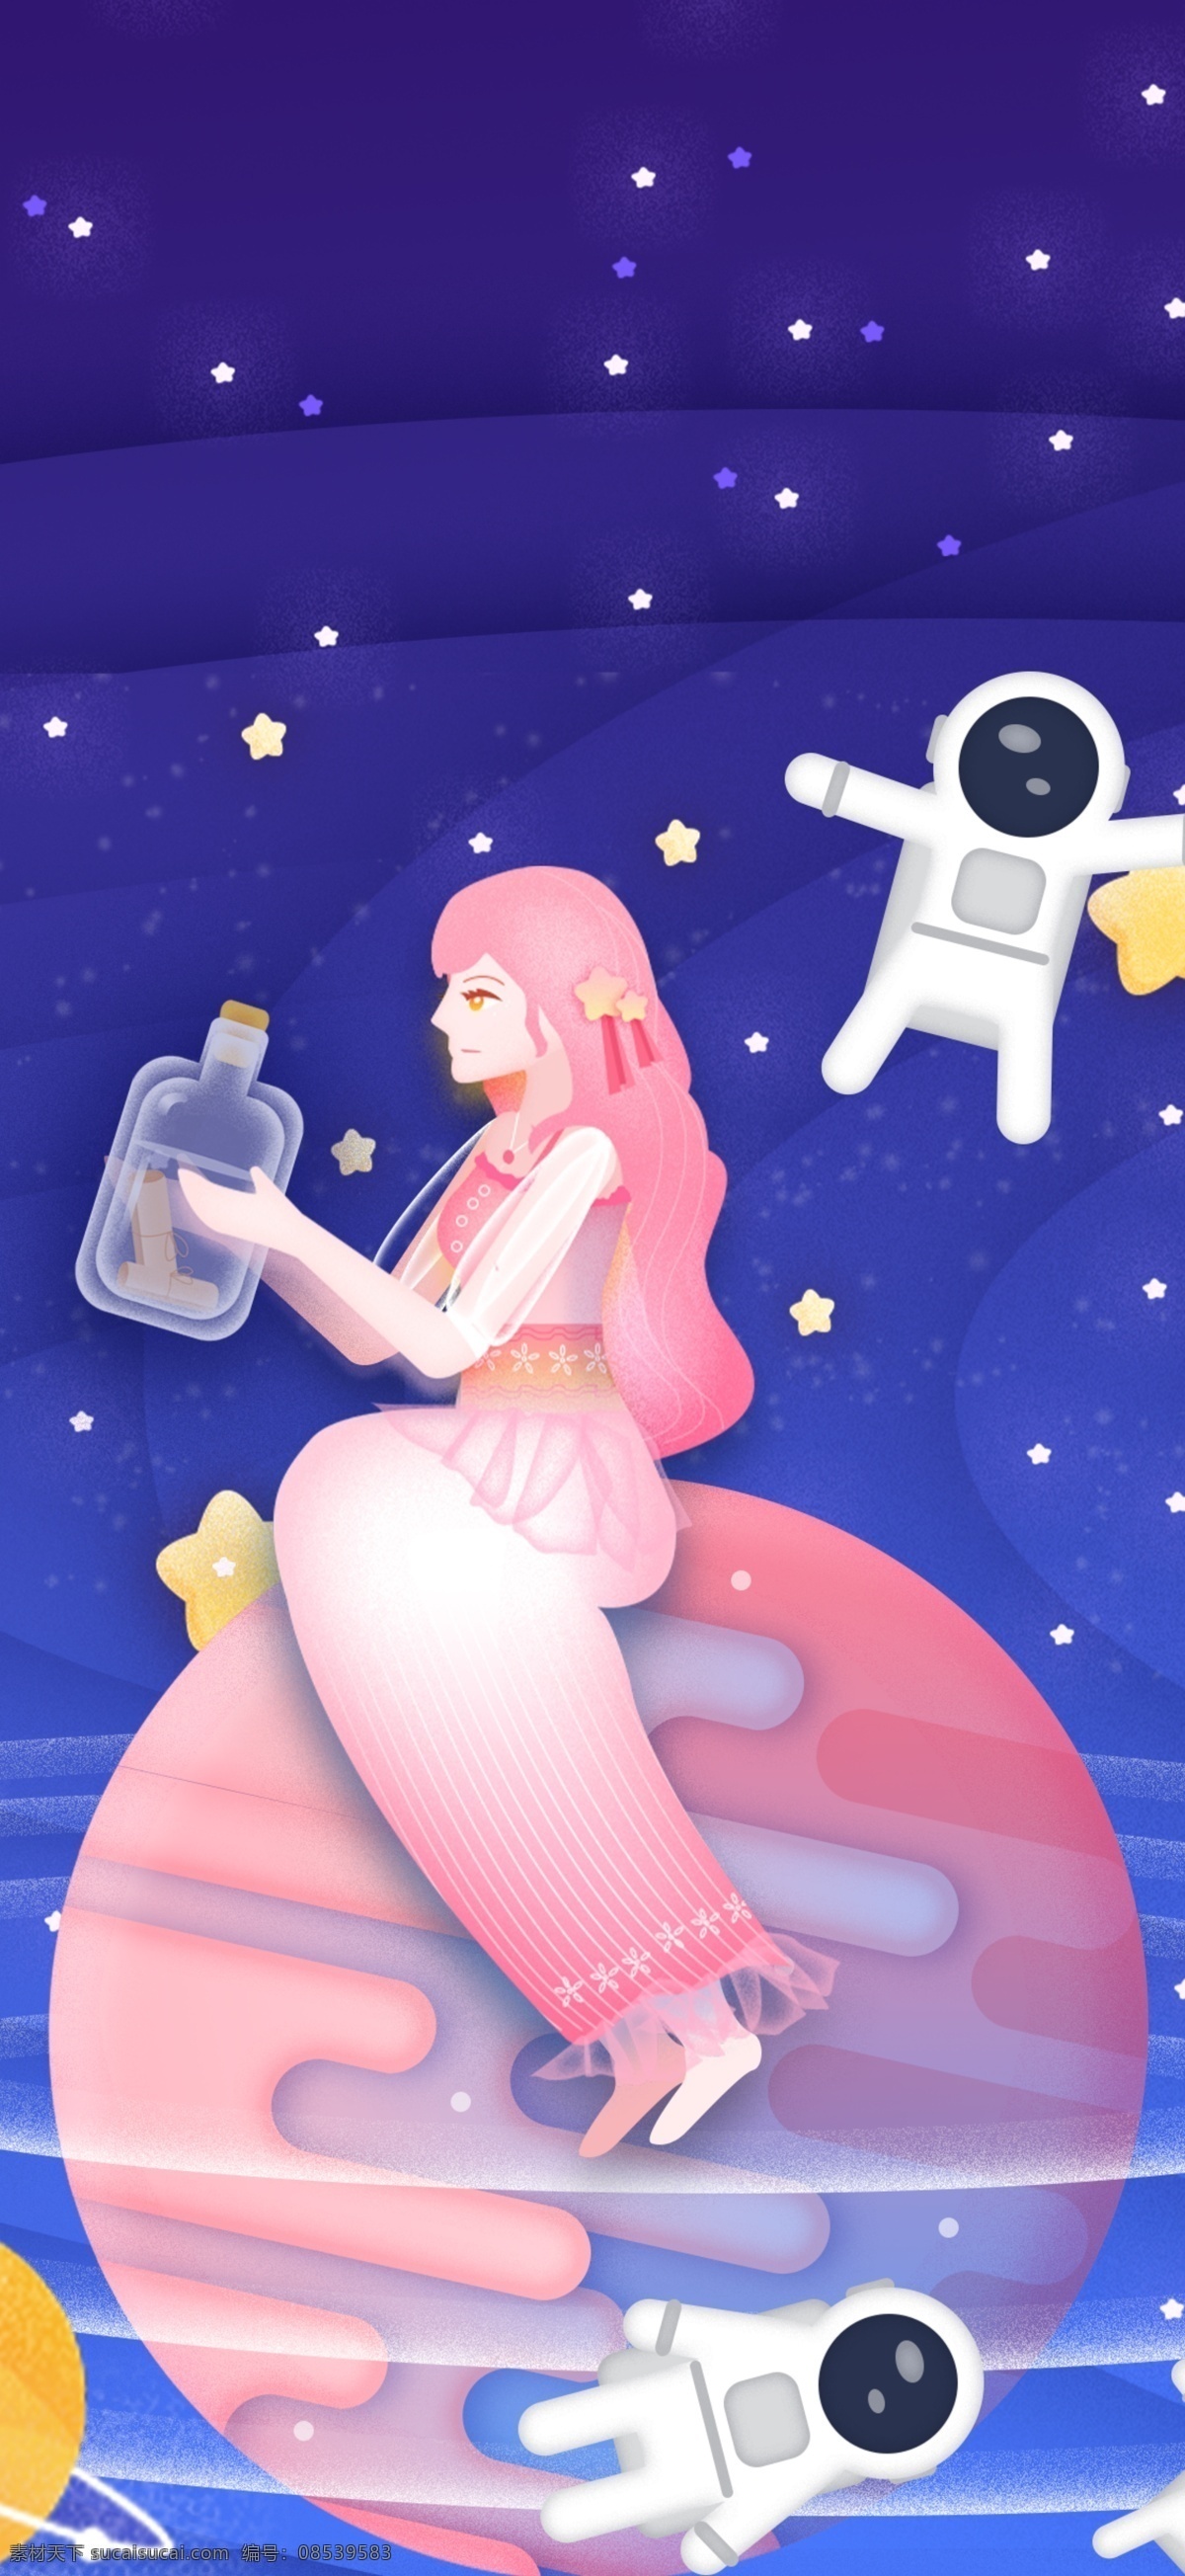 原创 插画 星空 星球 漂流 瓶 少女 宇宙 星星 科技 漂流瓶 星海 宇航员 星轨 银河 夜晚 夜空 航天服 月球 太阳系